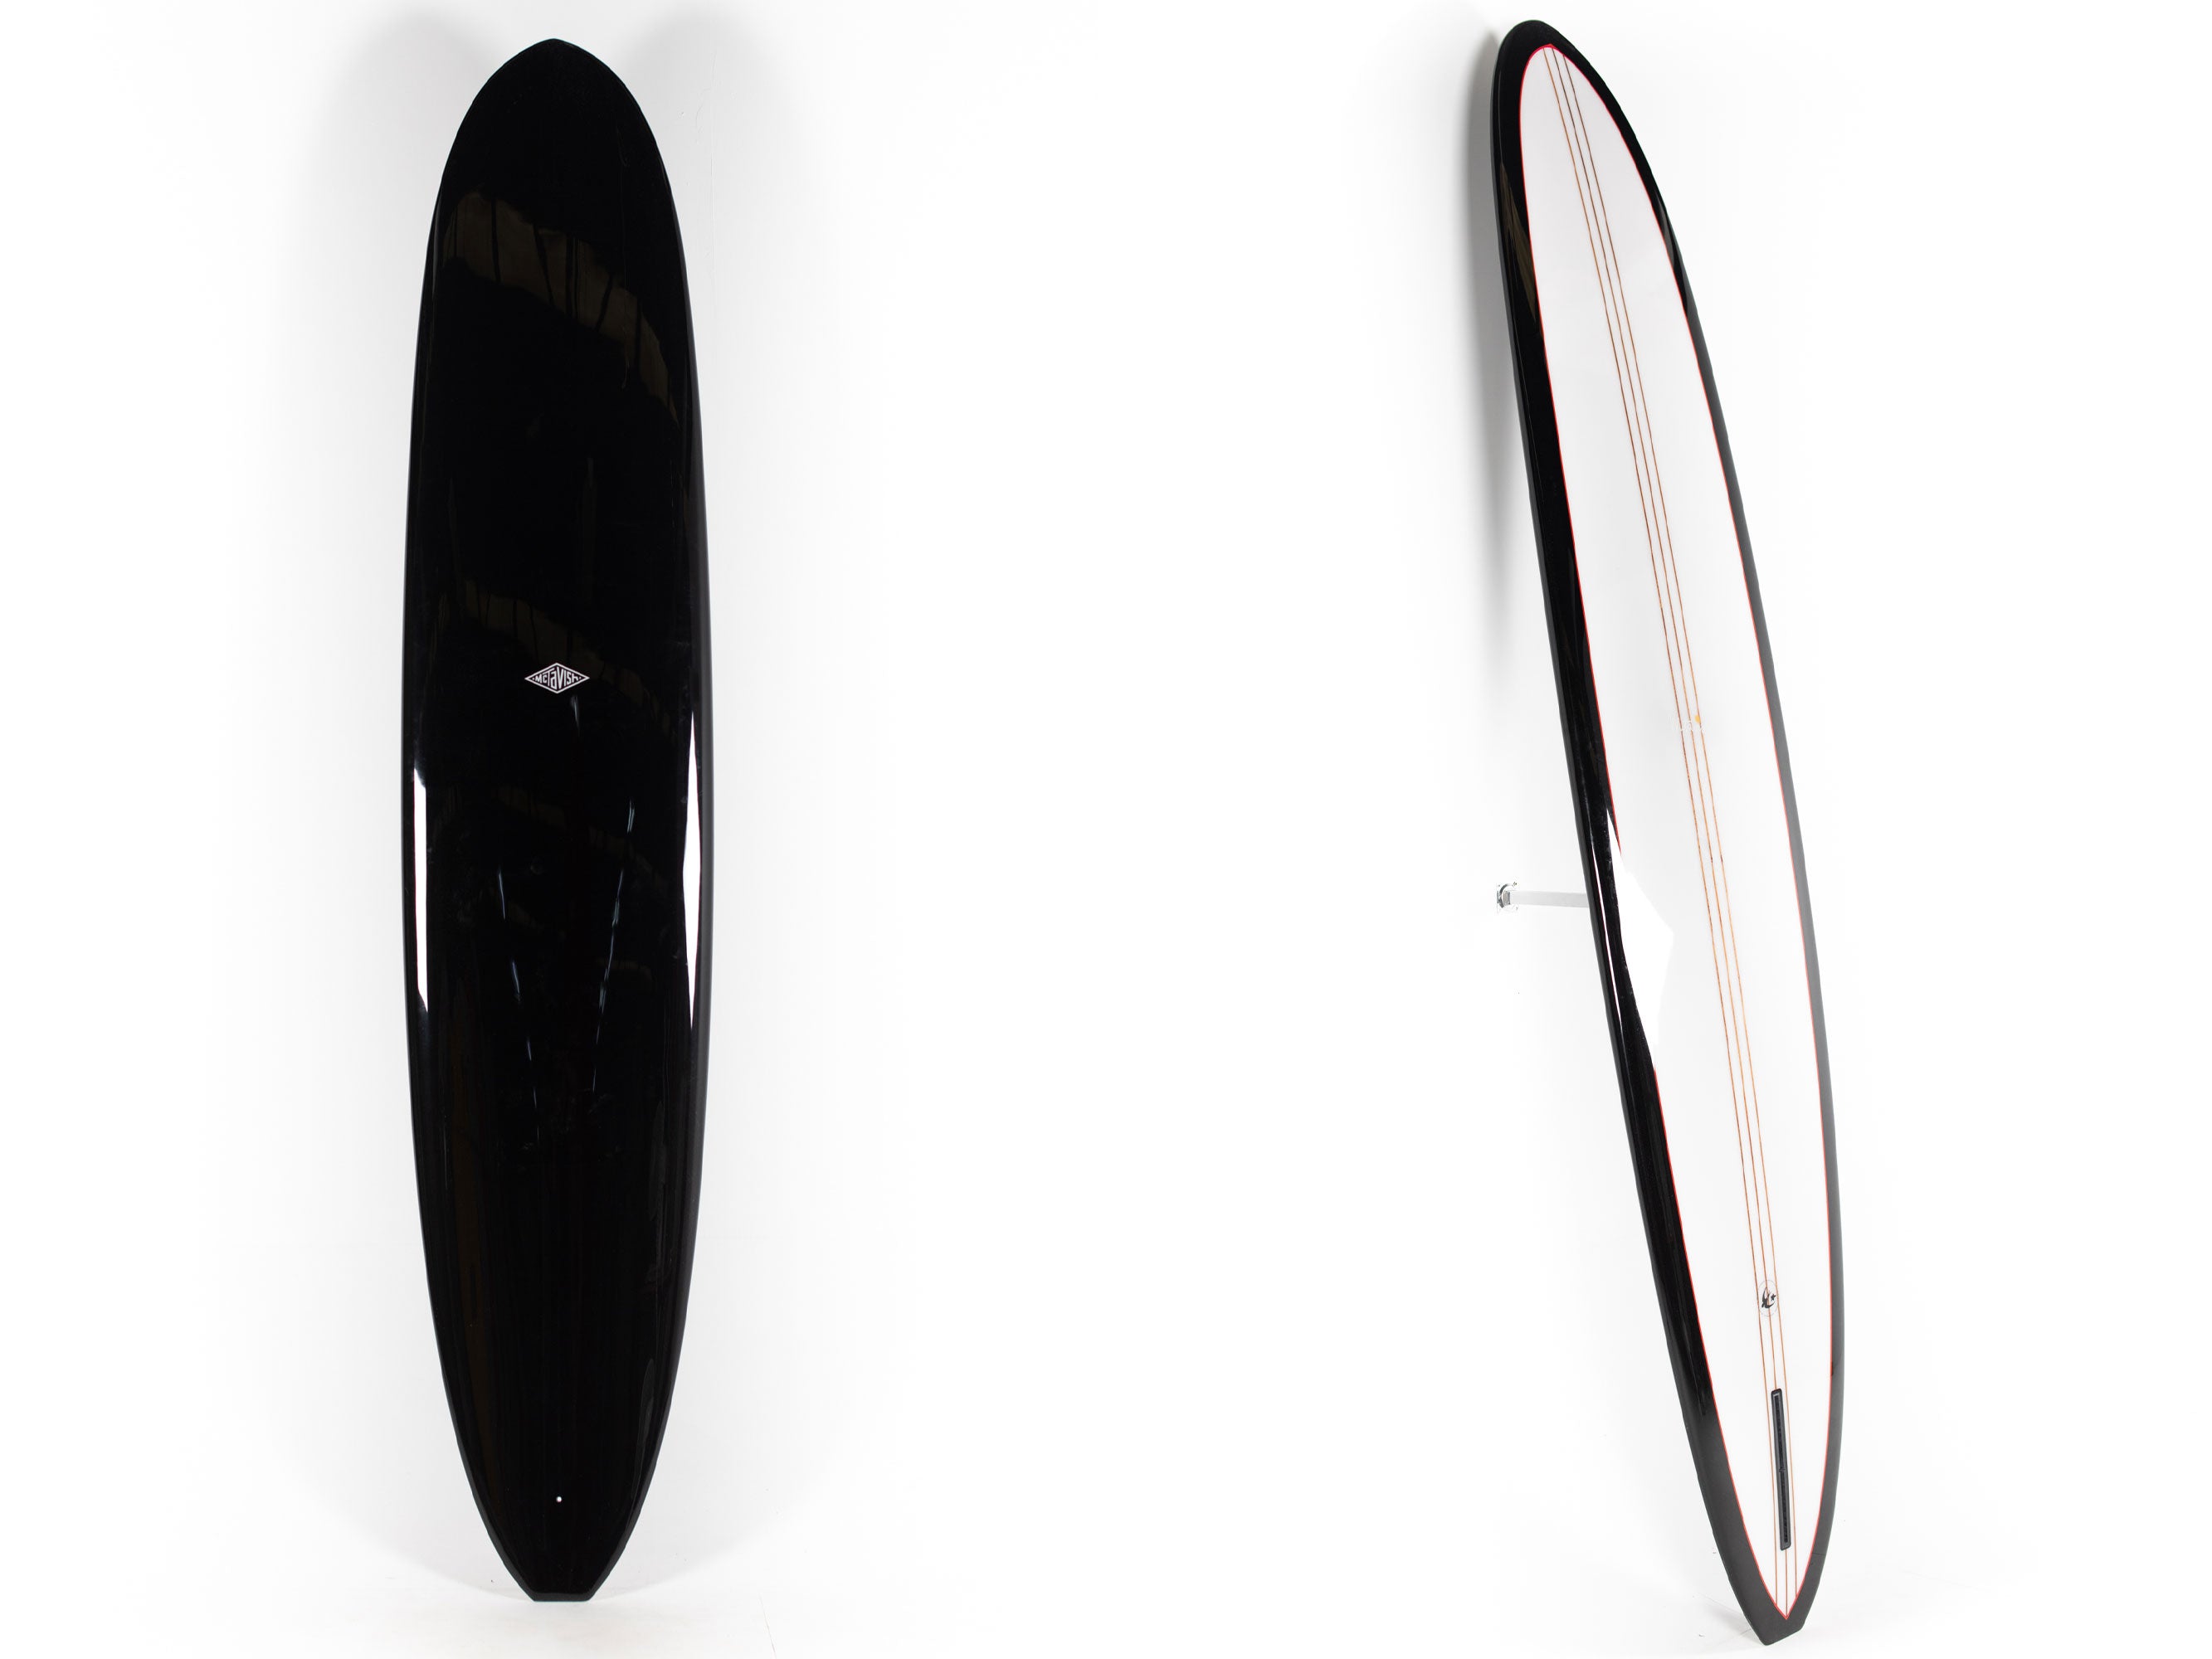 McTavish Surfboard - THE DIRT NAP by Bob McTavish - 9'7" x 23 x 3 - BM00785